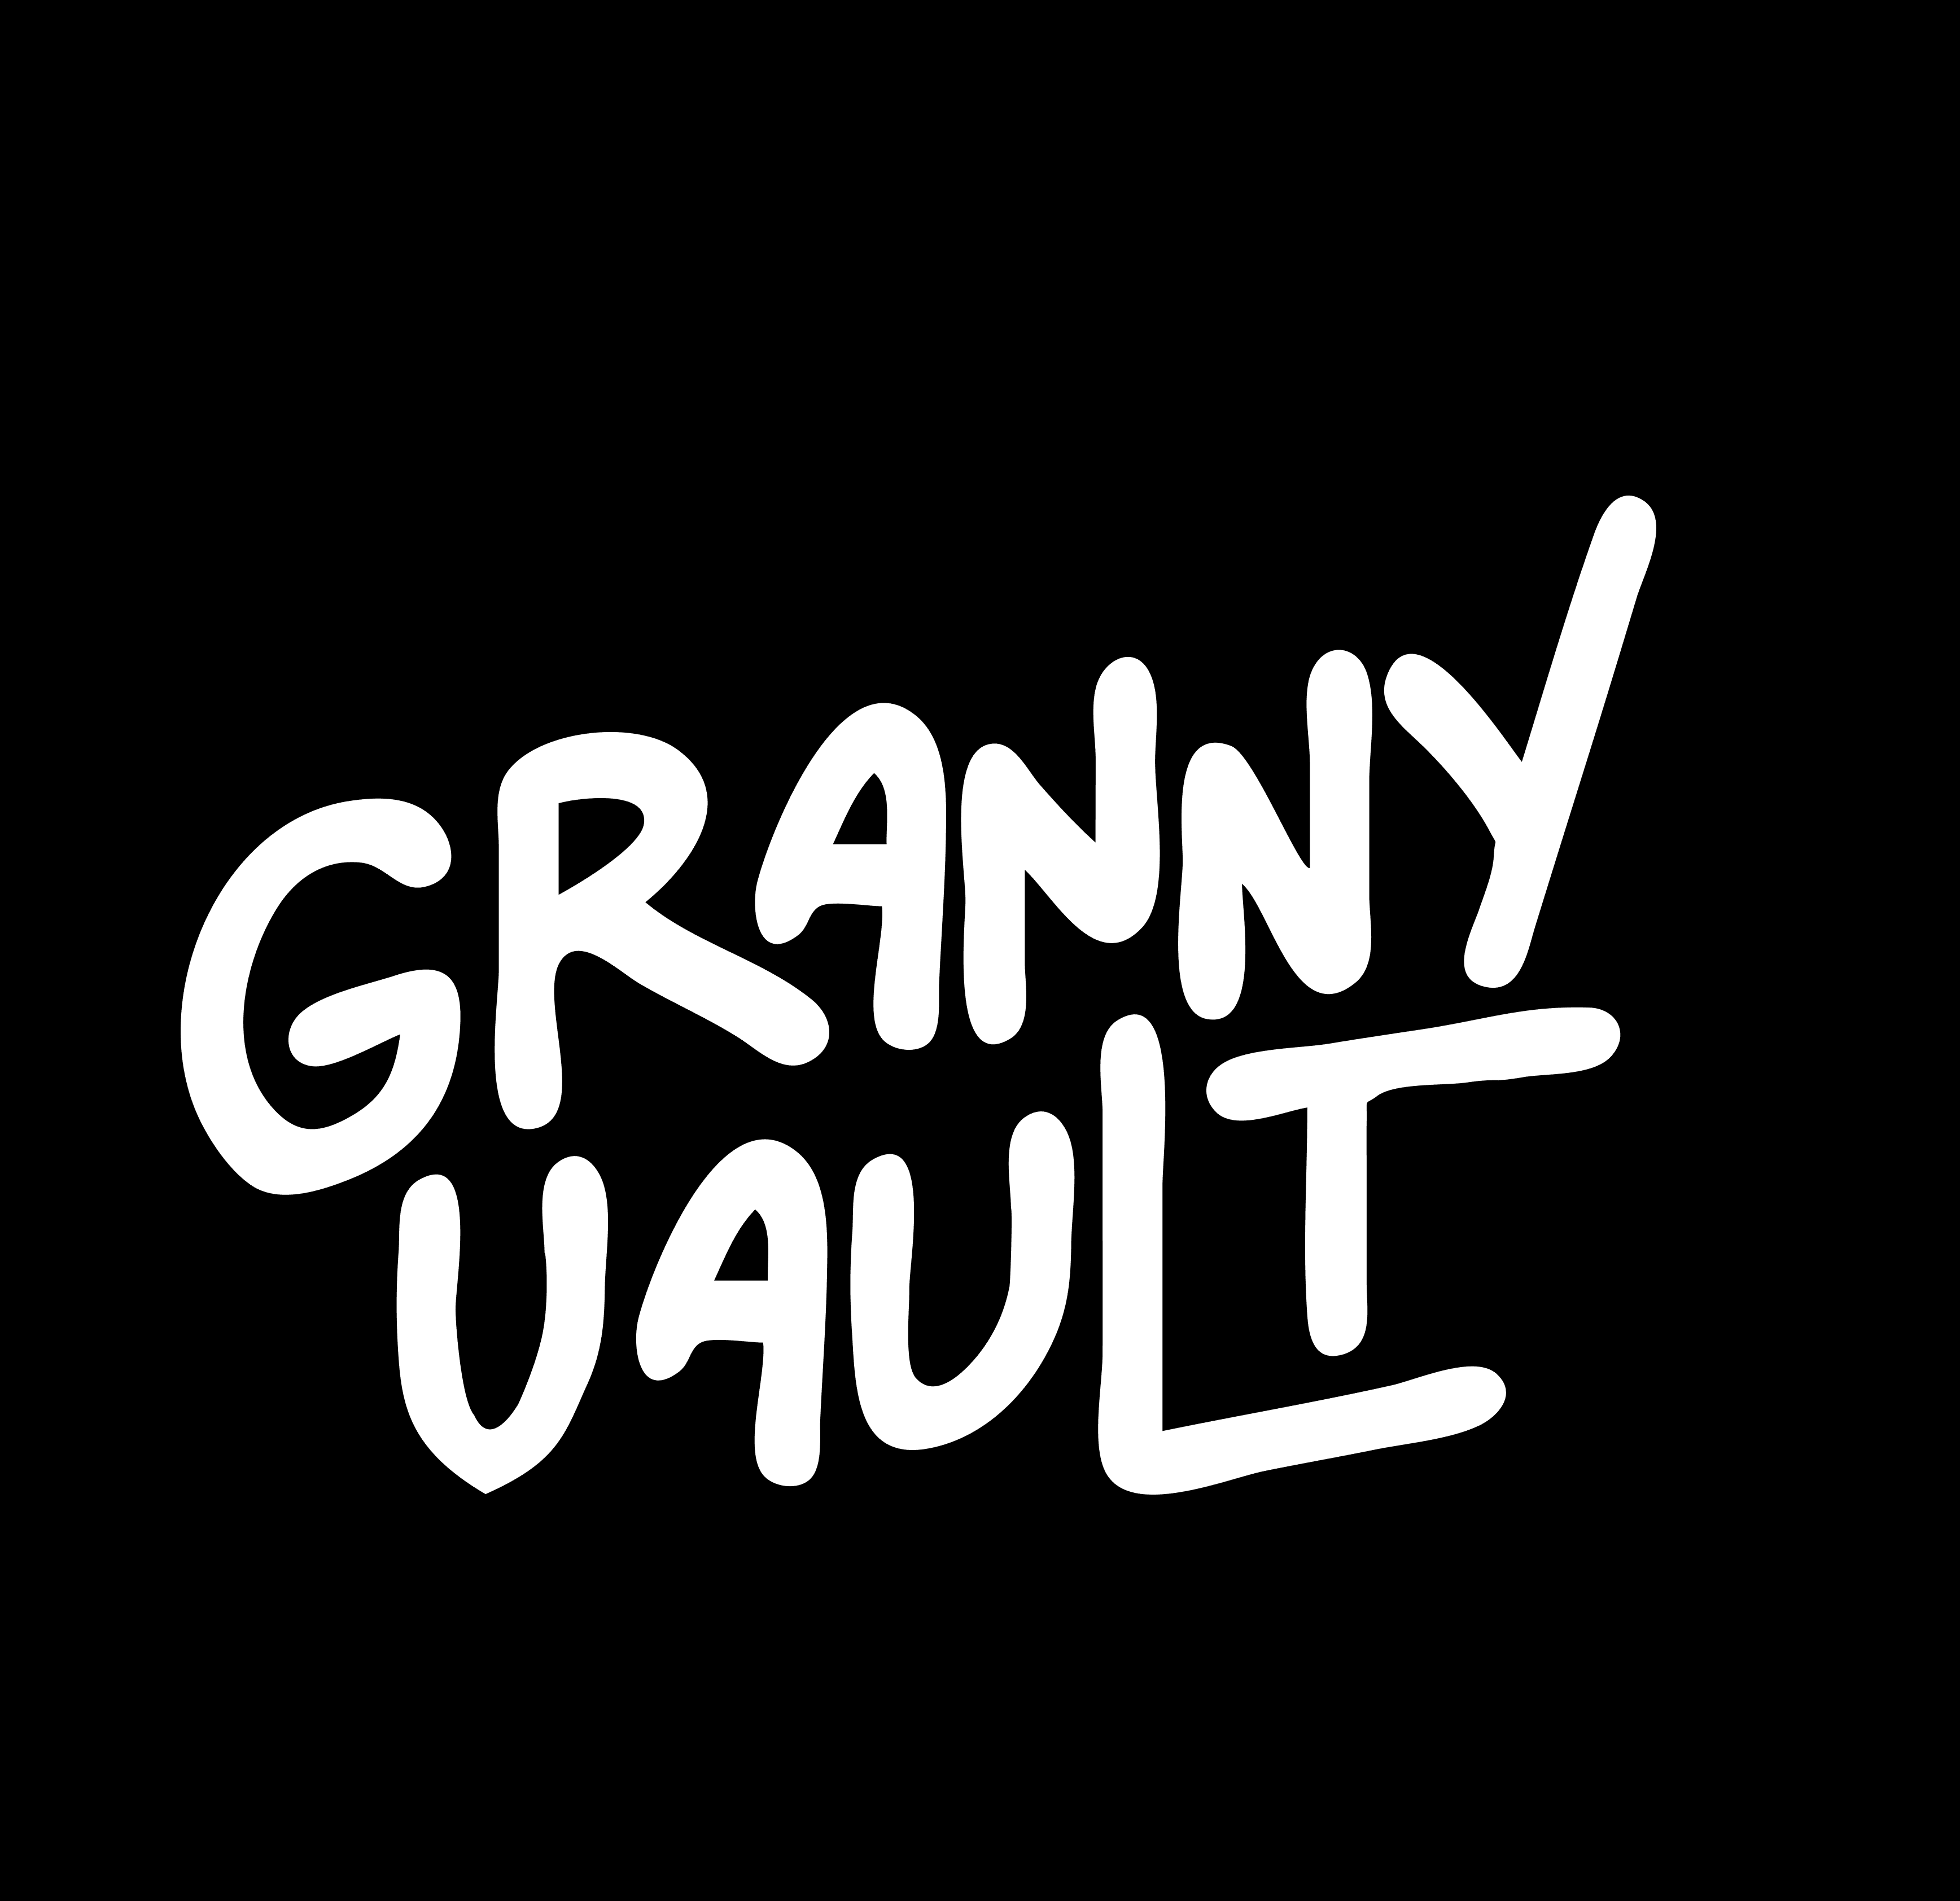 Granny-Vault